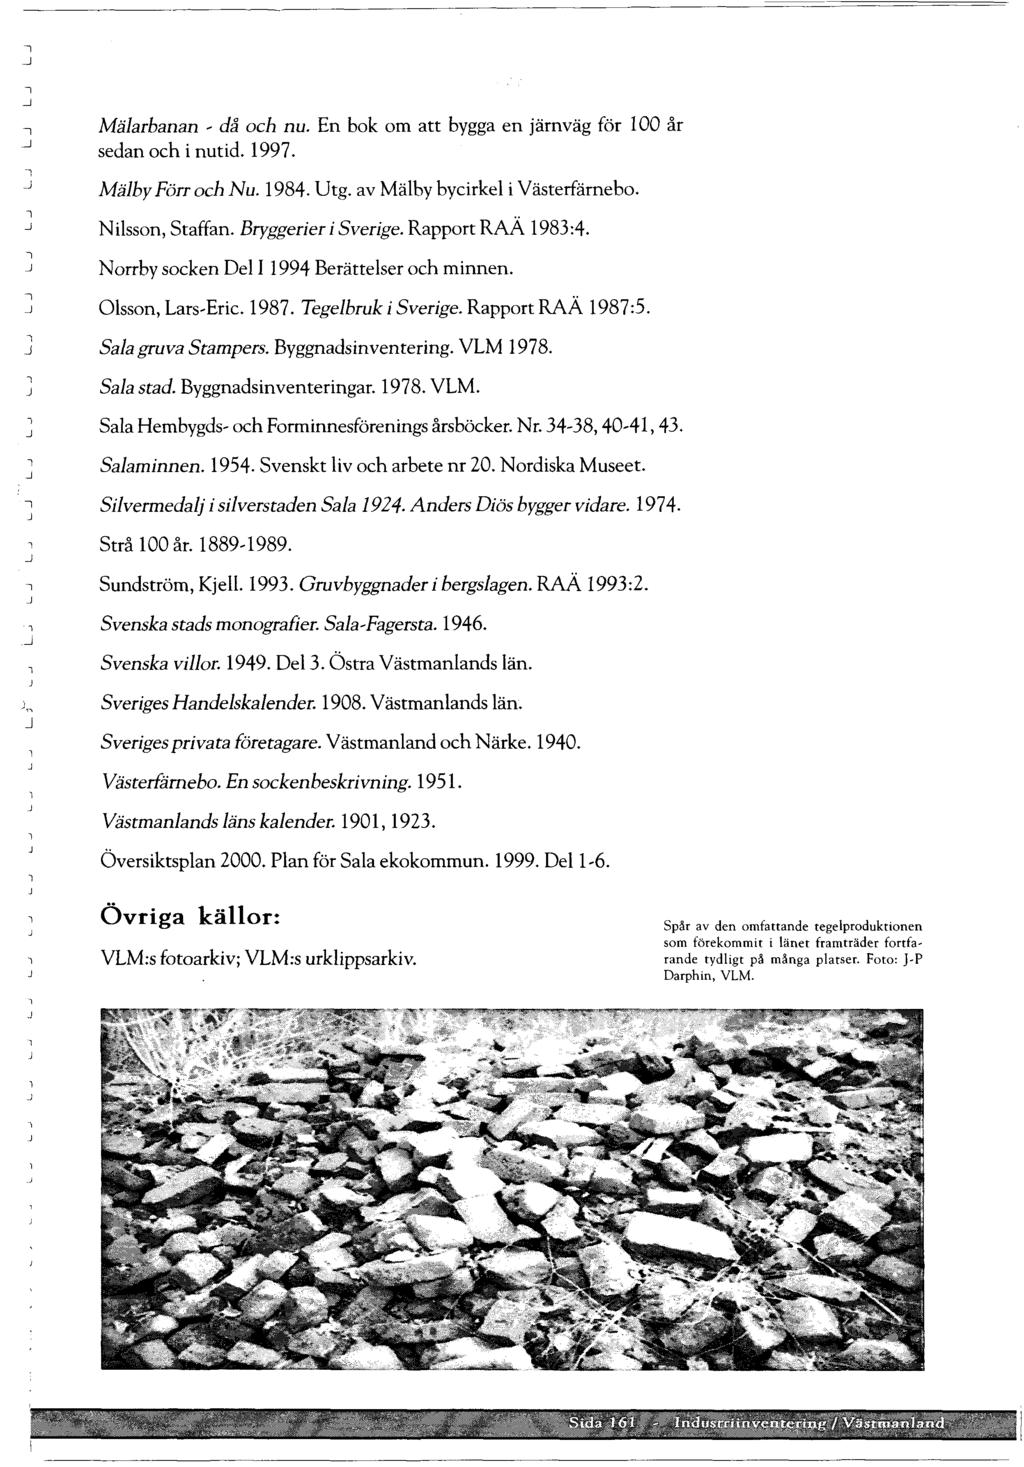 Mäarbanan ~ då och nu. En bok om att bygga en järnväg för 100 år sedan och i nutid. 1997. Mäby Förr och Nu. 1984. Utg. av Mäby bycirke i Västerfärnebo. -. Nisson, Staffan. Bryggerier i Sverige.